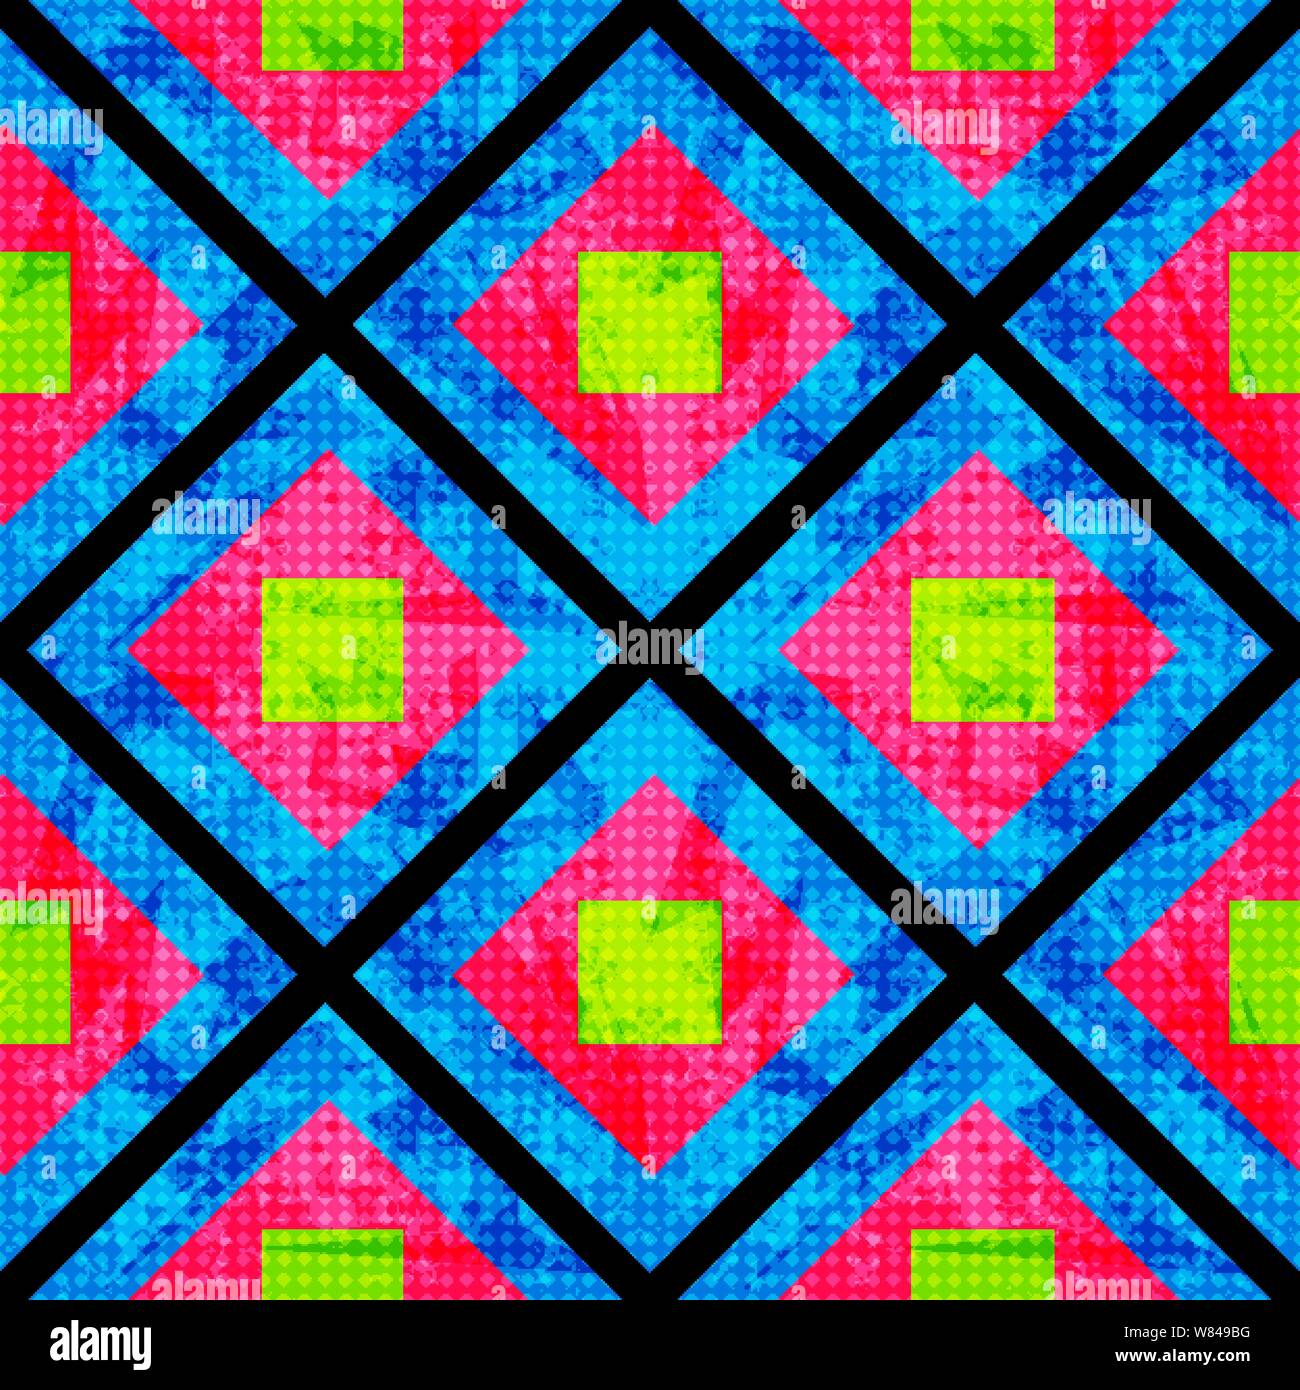 Grün und Rosa auf einem blauen Hintergrund der Polygone. Nahtlose geometrische Muster. grunge Effekt Stock Vektor